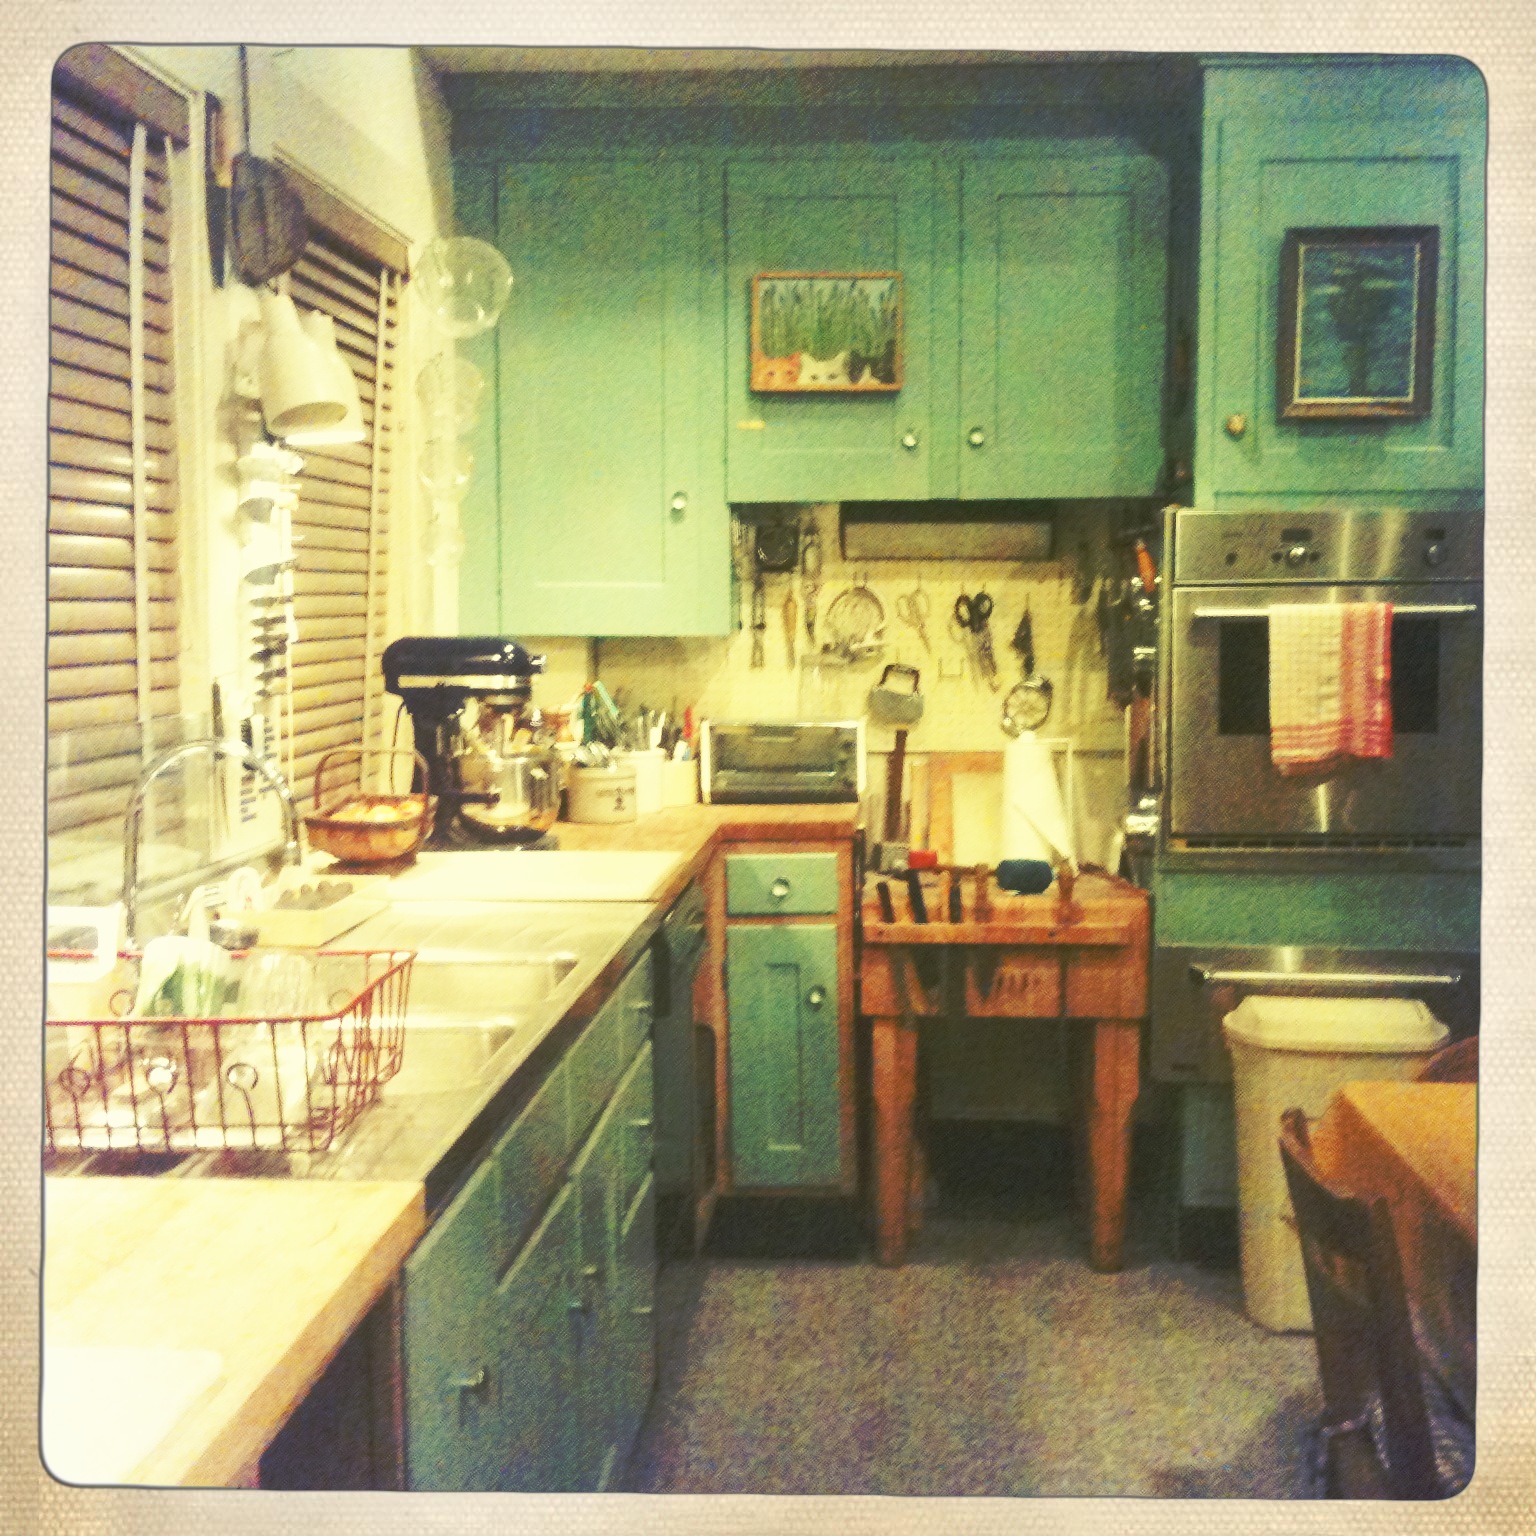 Julia Child's kitchen